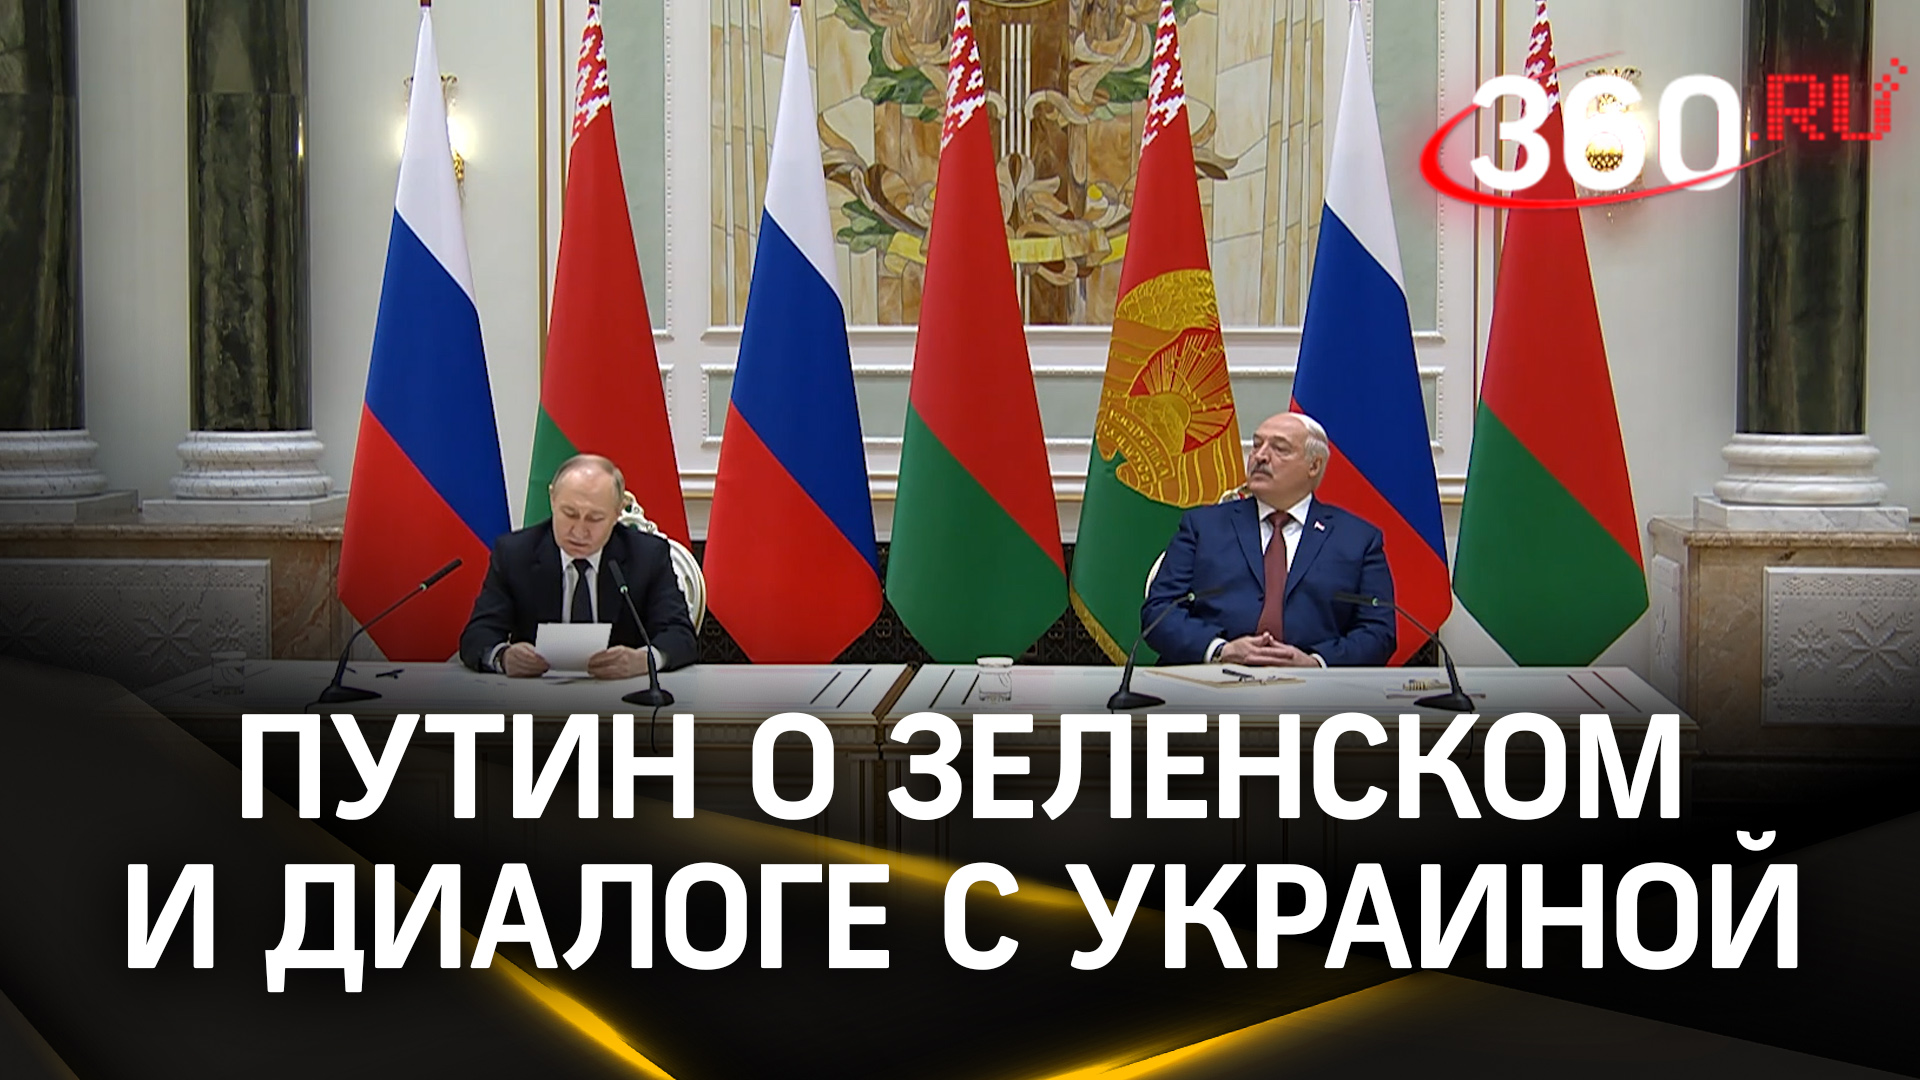 «А с кем вести переговоры?»: Путин о Зеленском и возможном диалоге с Украиной